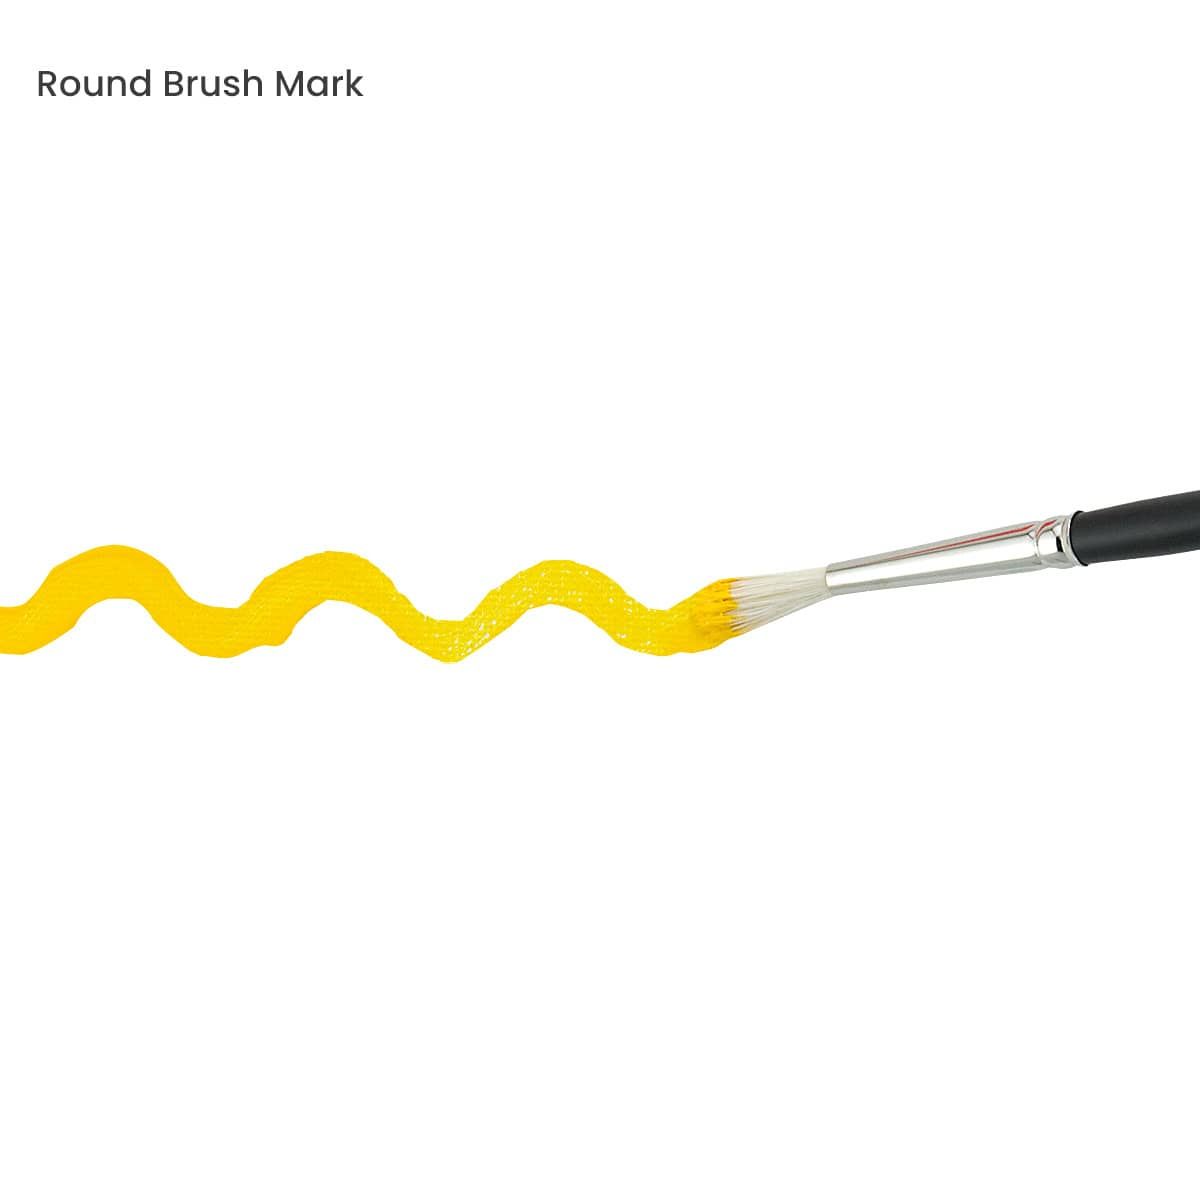 Round Brush Mark